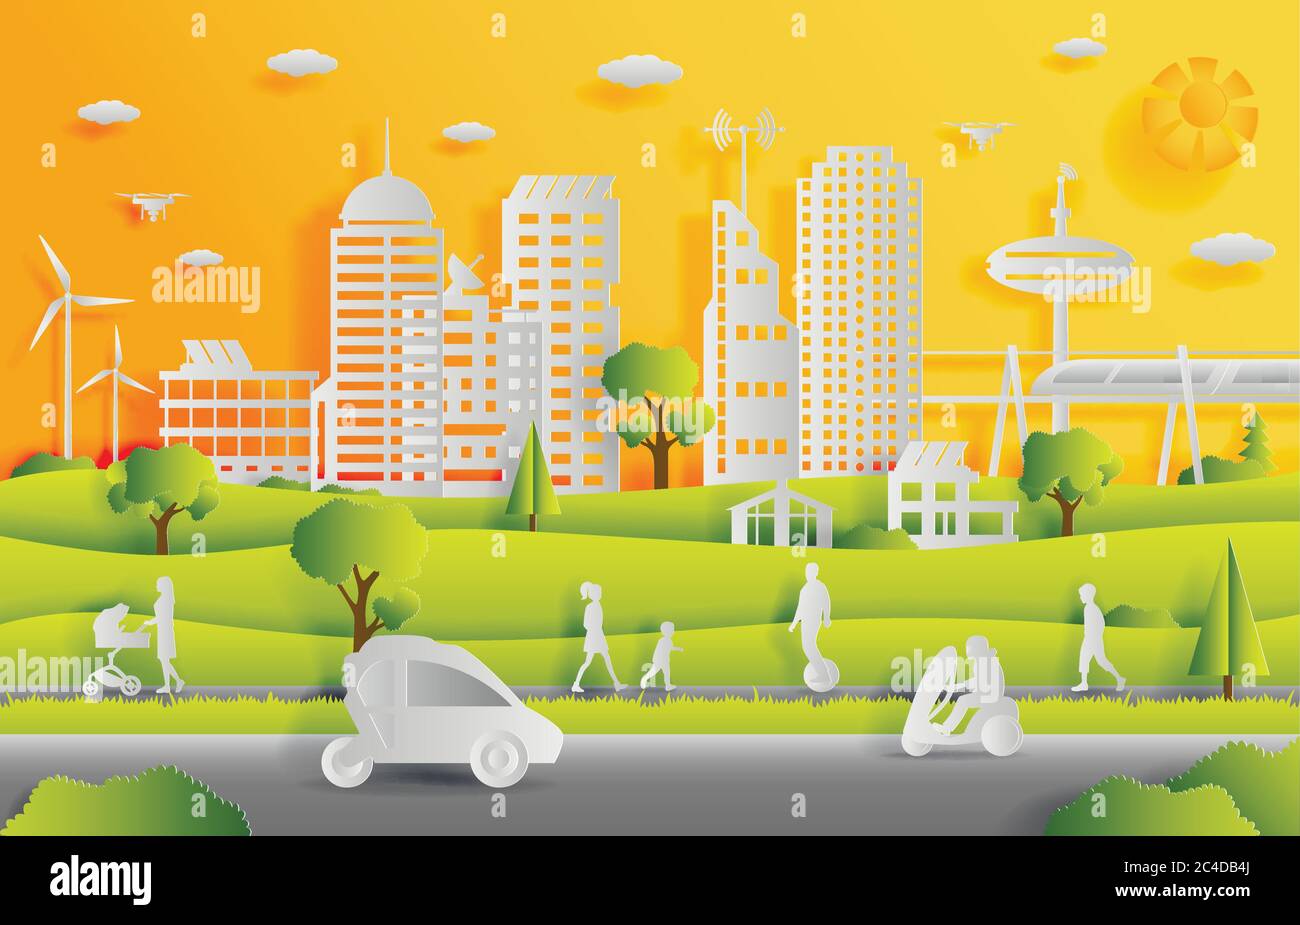 Konzept der Smart City mit Technologien der Zukunft und städtischen Innovationen, Papier schneiden Design Vektor Illustration Stock Vektor